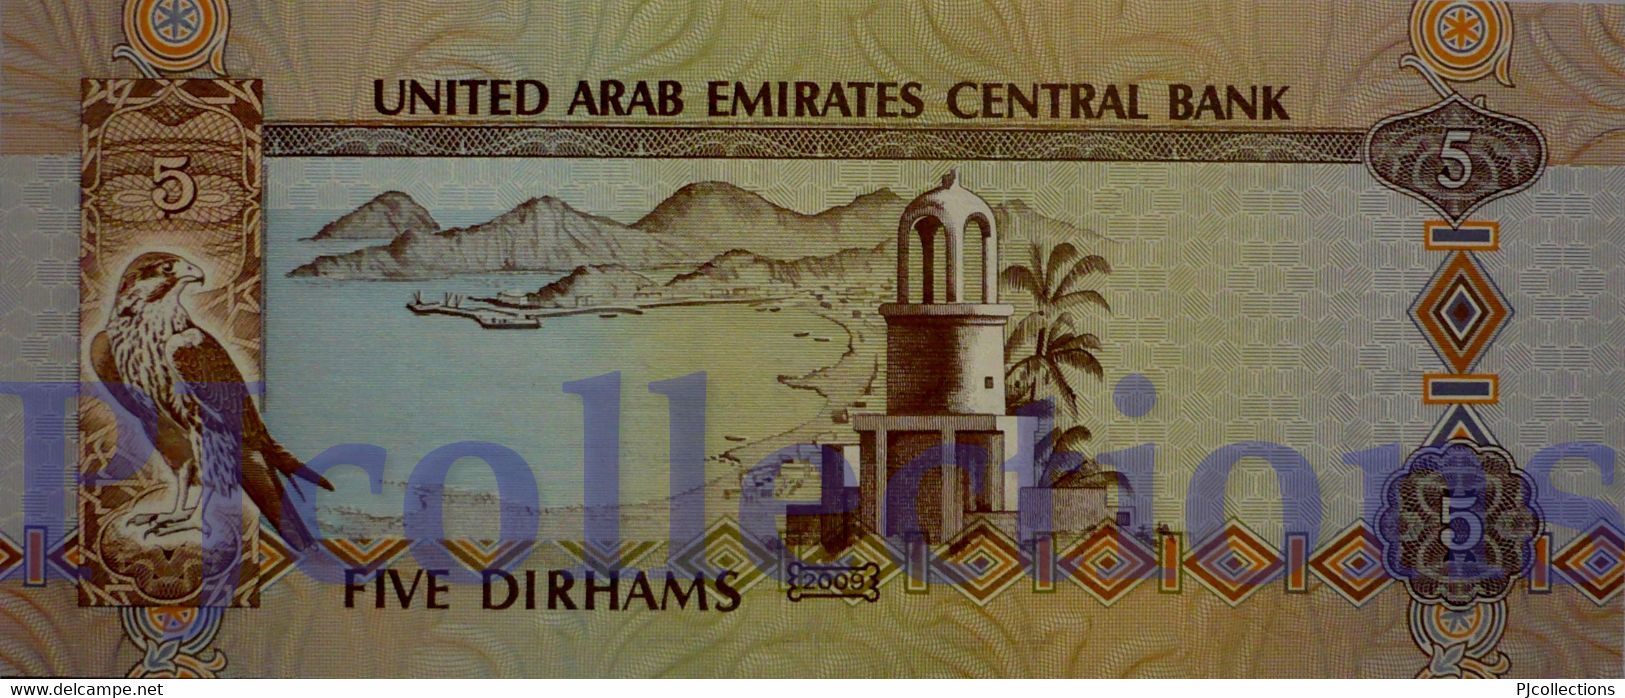 UNITED ARAB EMIRATES 5 DIRHAMS 2009 PICK 26a UNC - United Arab Emirates